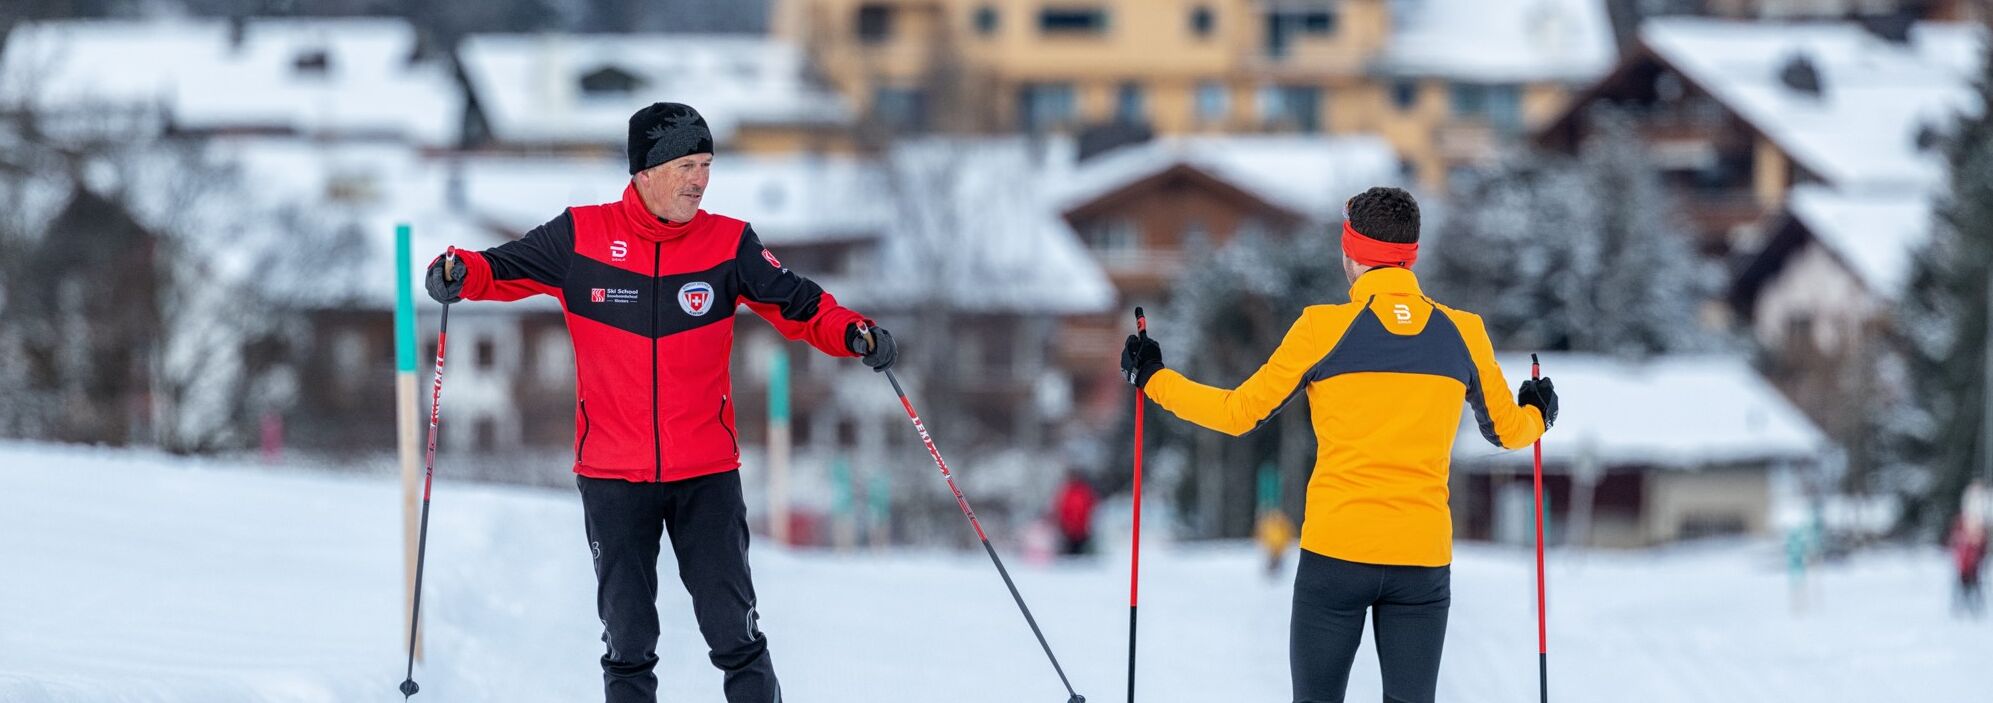 Langlauf Privatkurs bei der Skischule Klosters